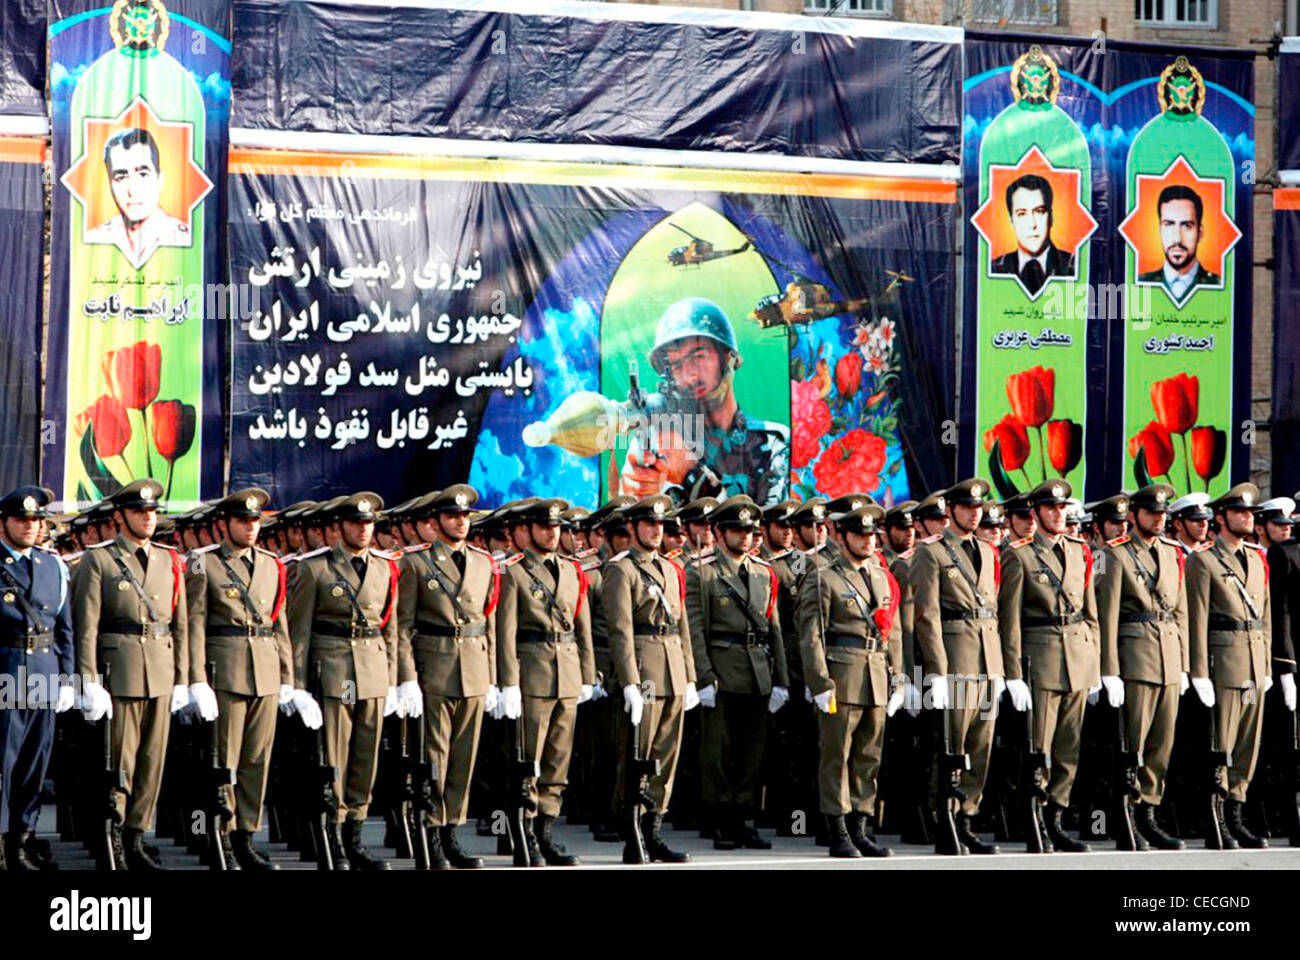 Los oficiales y soldados del ejército iraní durante un desfile en Teherán. Foto de stock